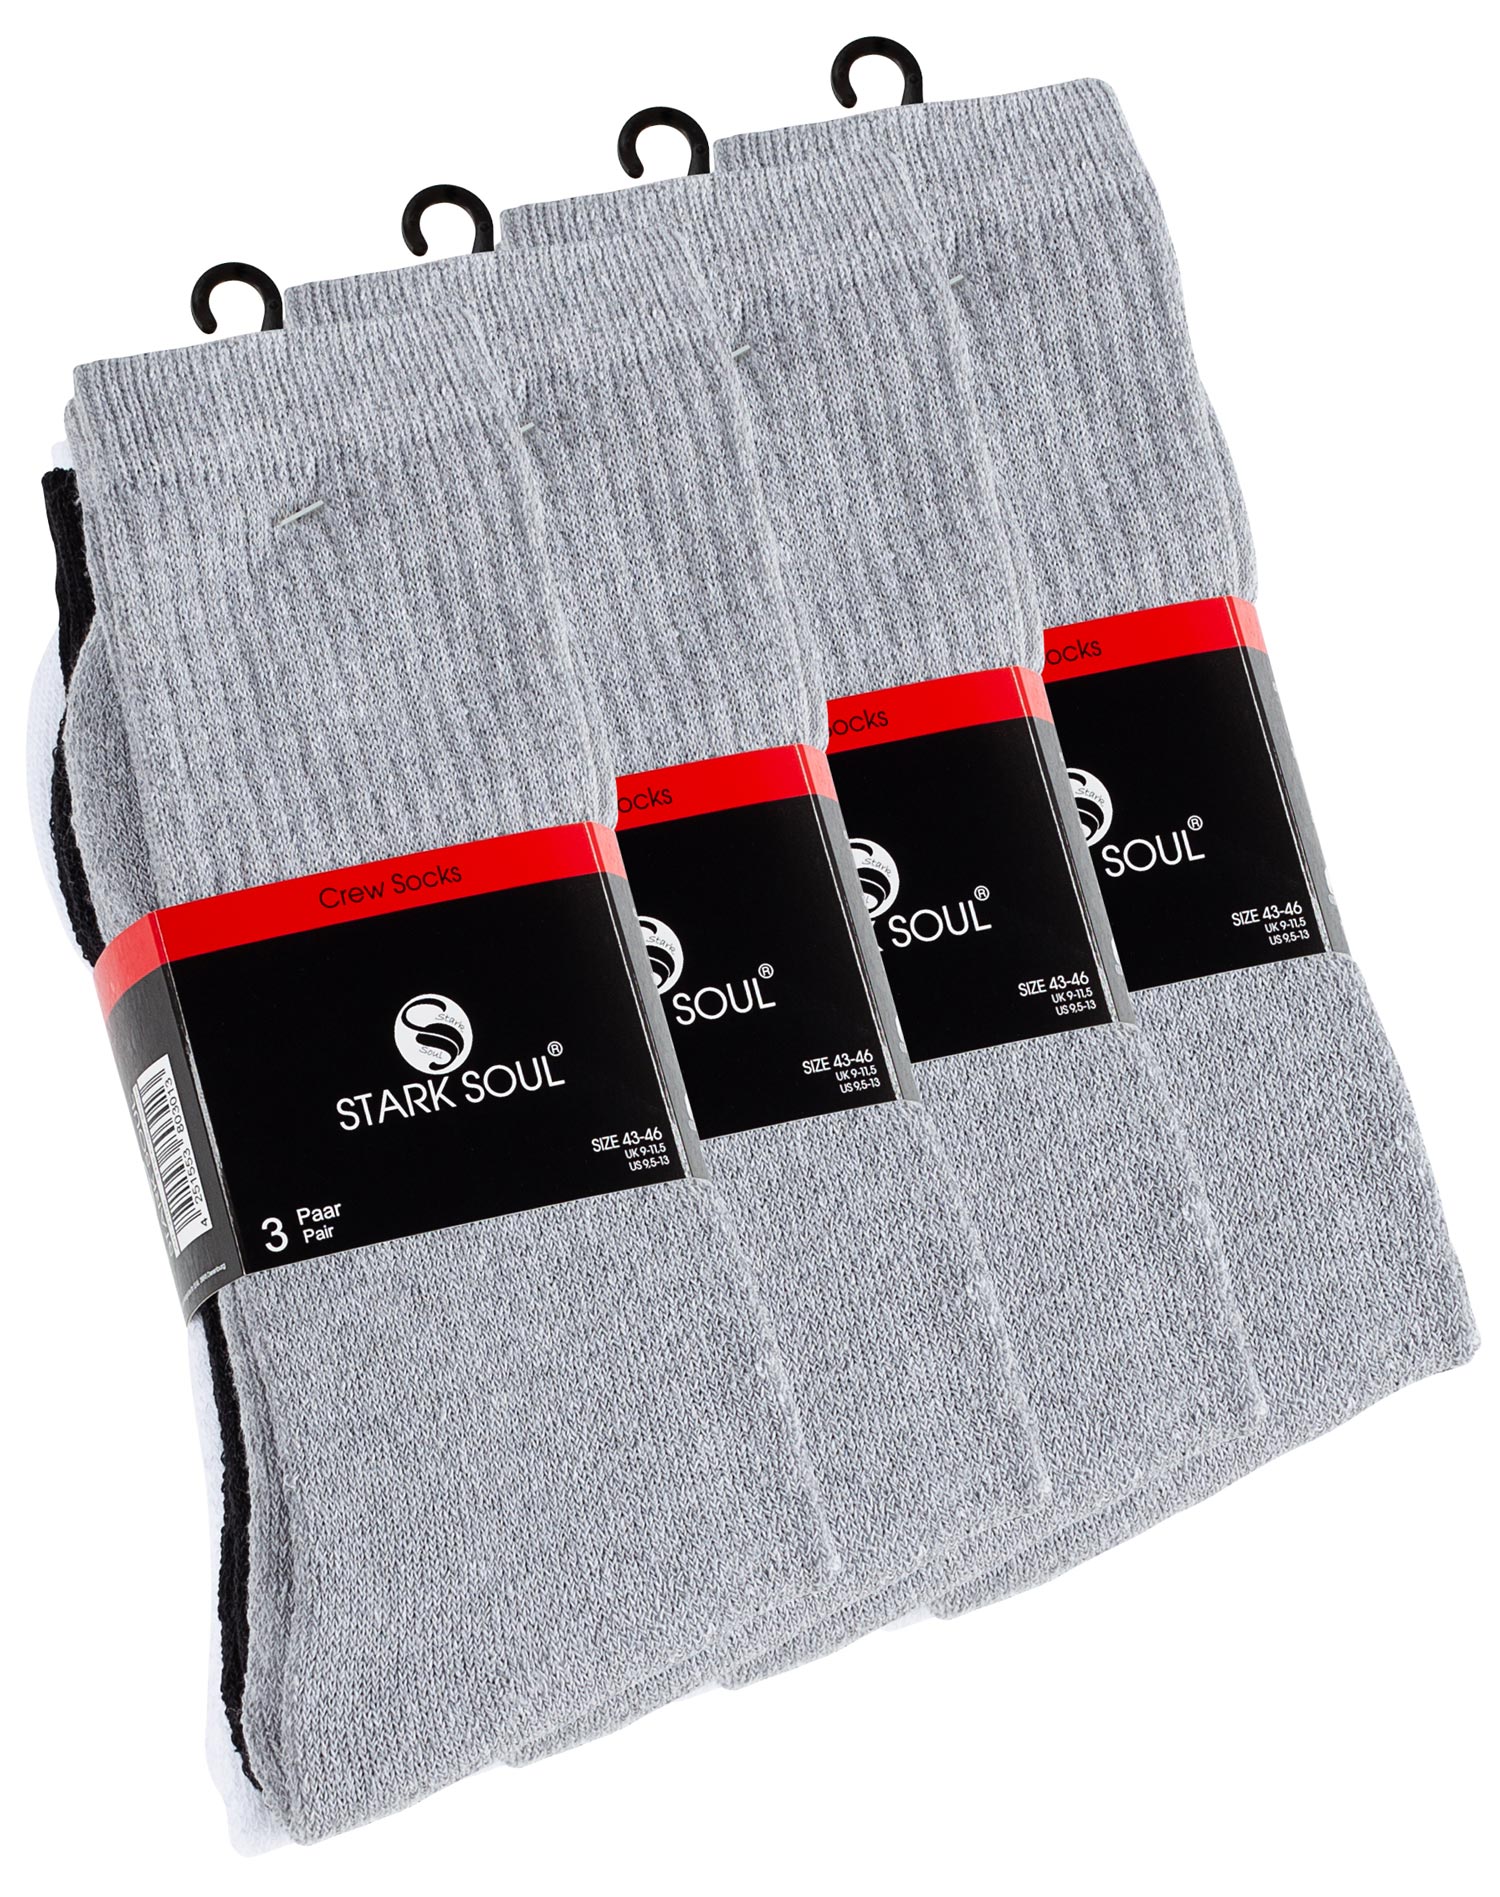 Crew Socken - 6 oder 12 Paar Tennissocken in schwarz, weiss, grau |  Sockswear | Damen